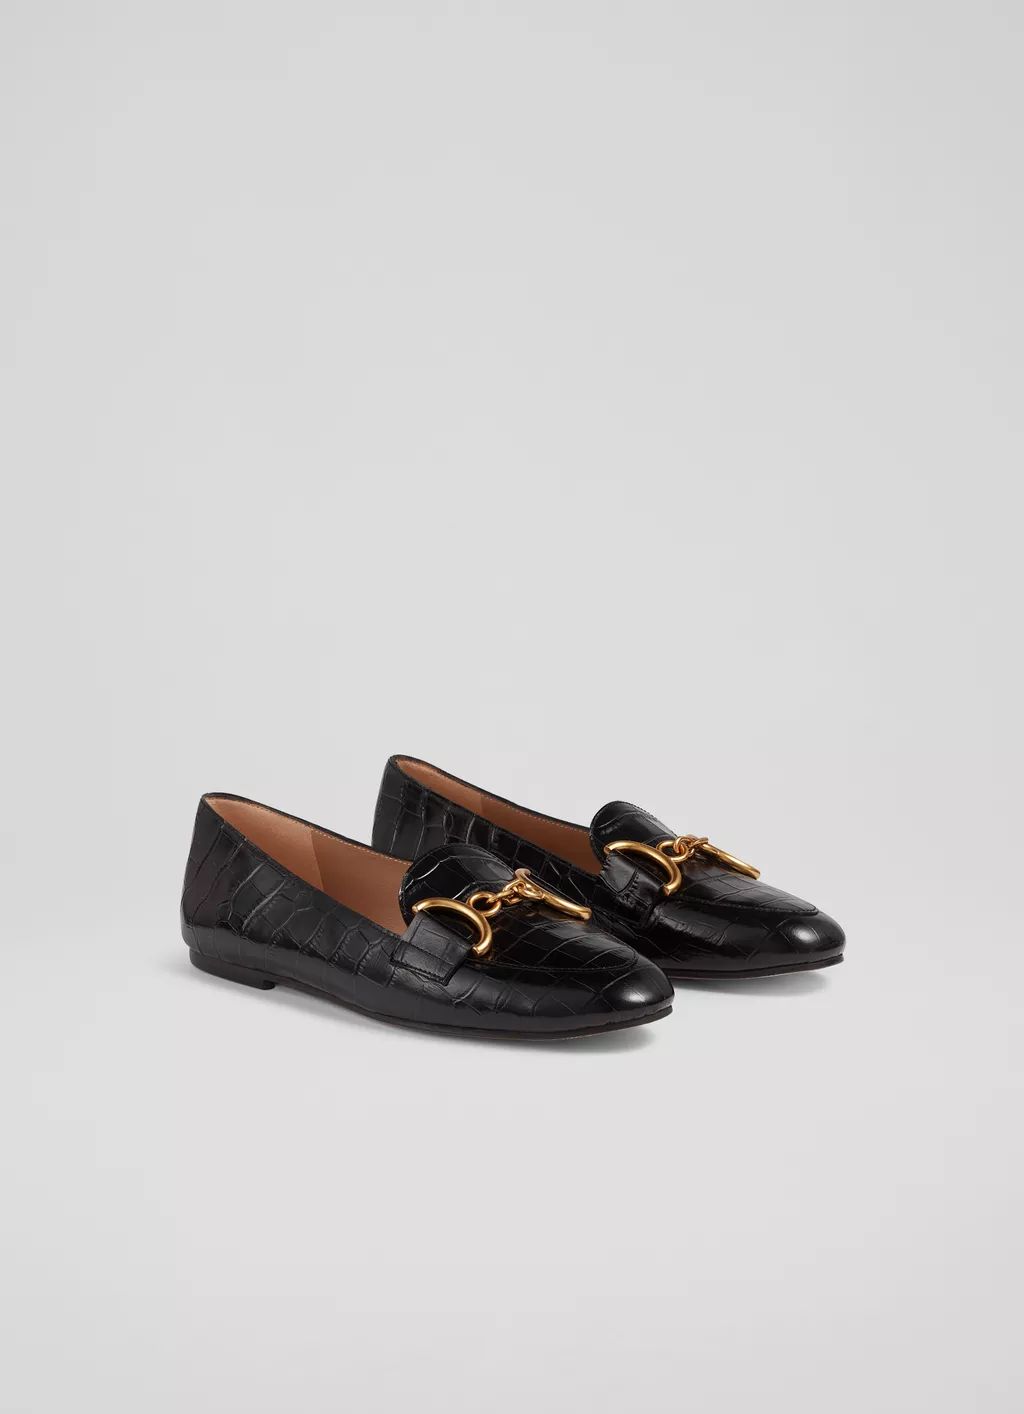 Daphne Black Croc-Effect Leather Loafers | L.K. Bennett (UK)